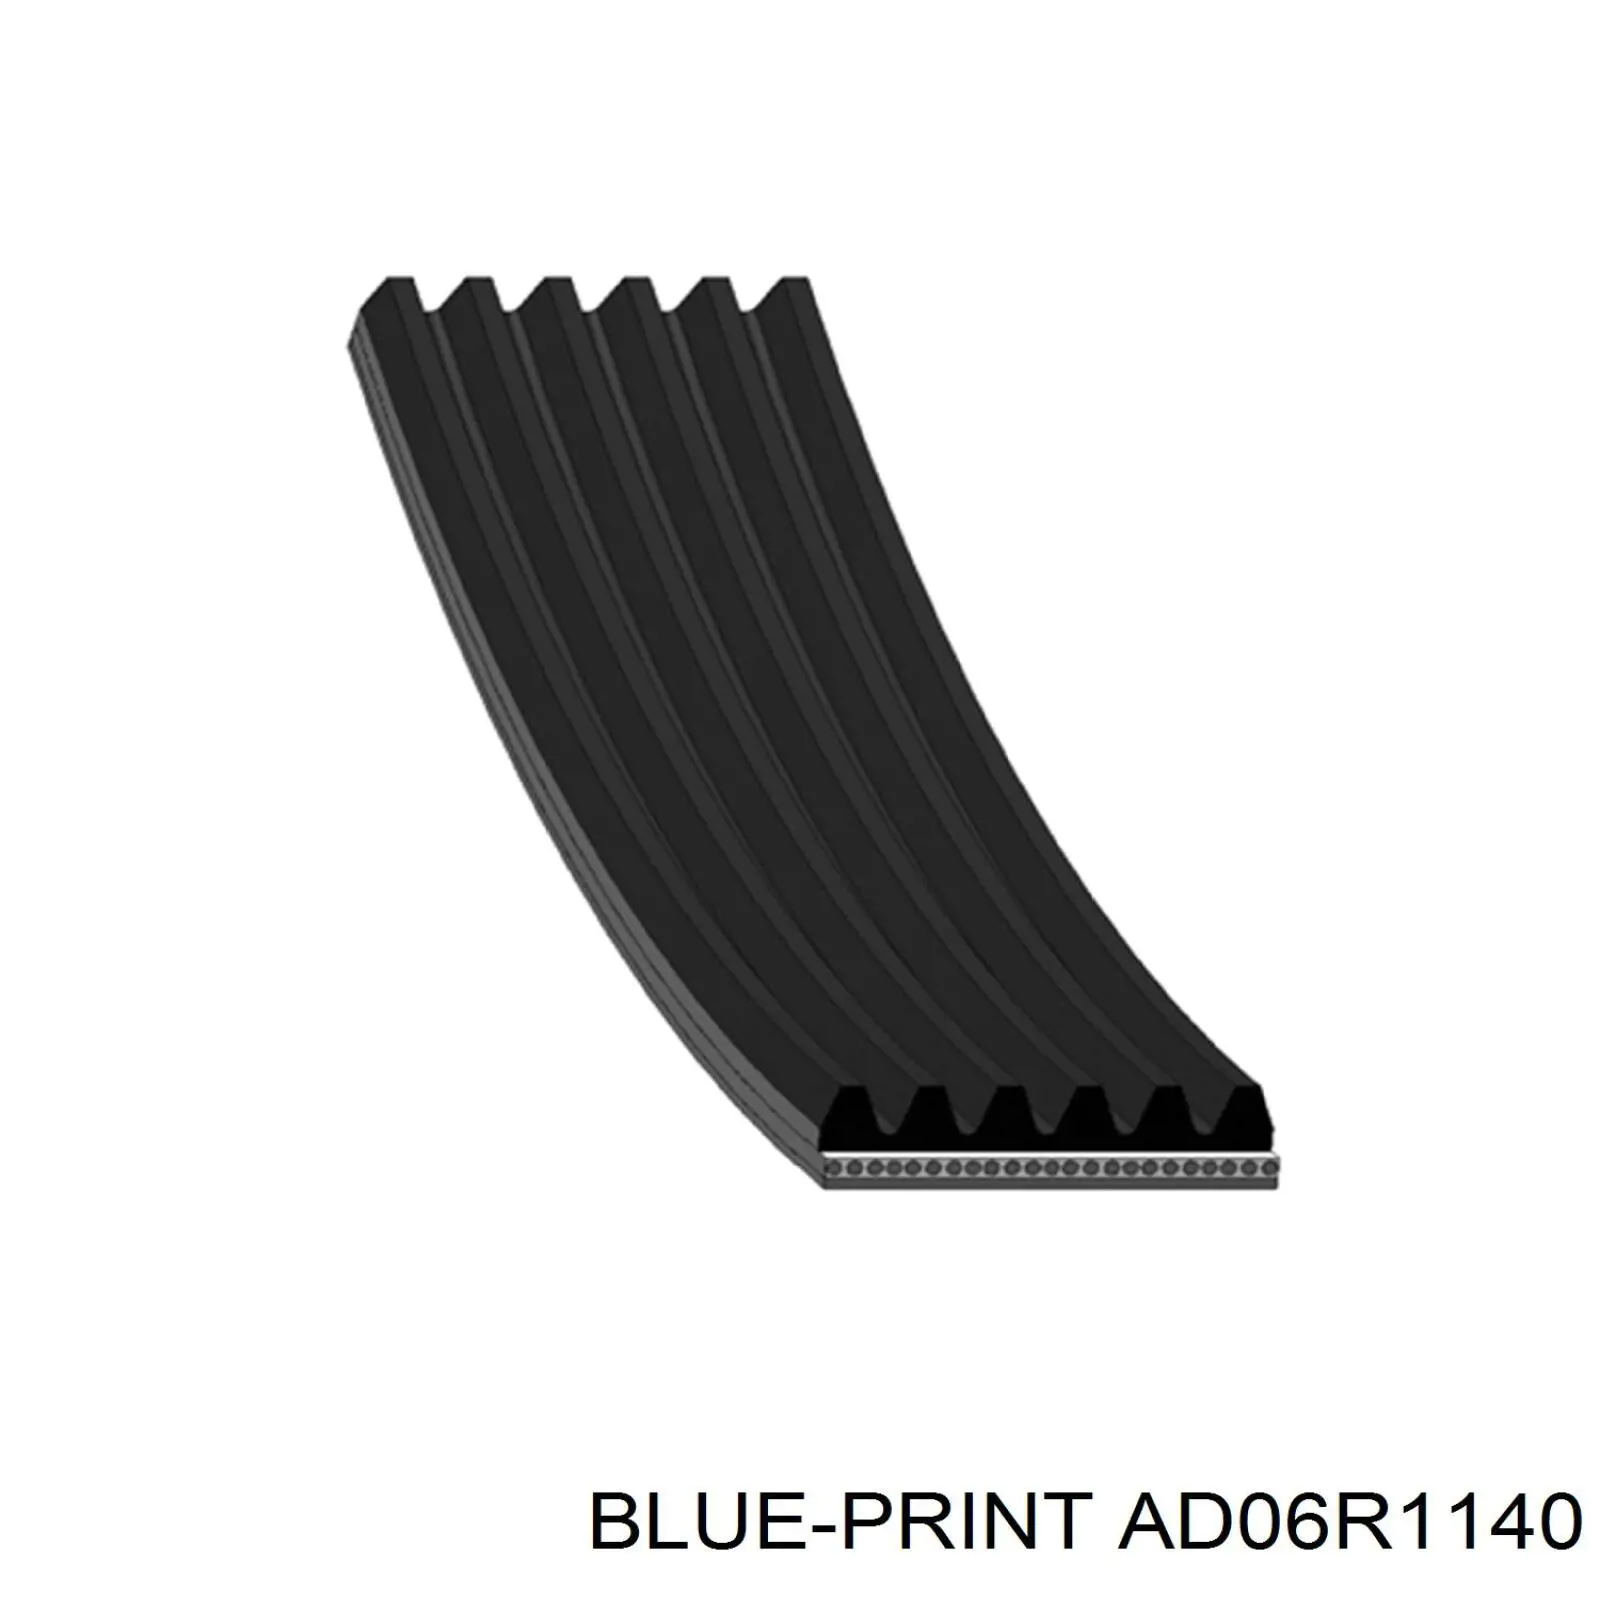 AD06R1140 Blue Print correa trapezoidal